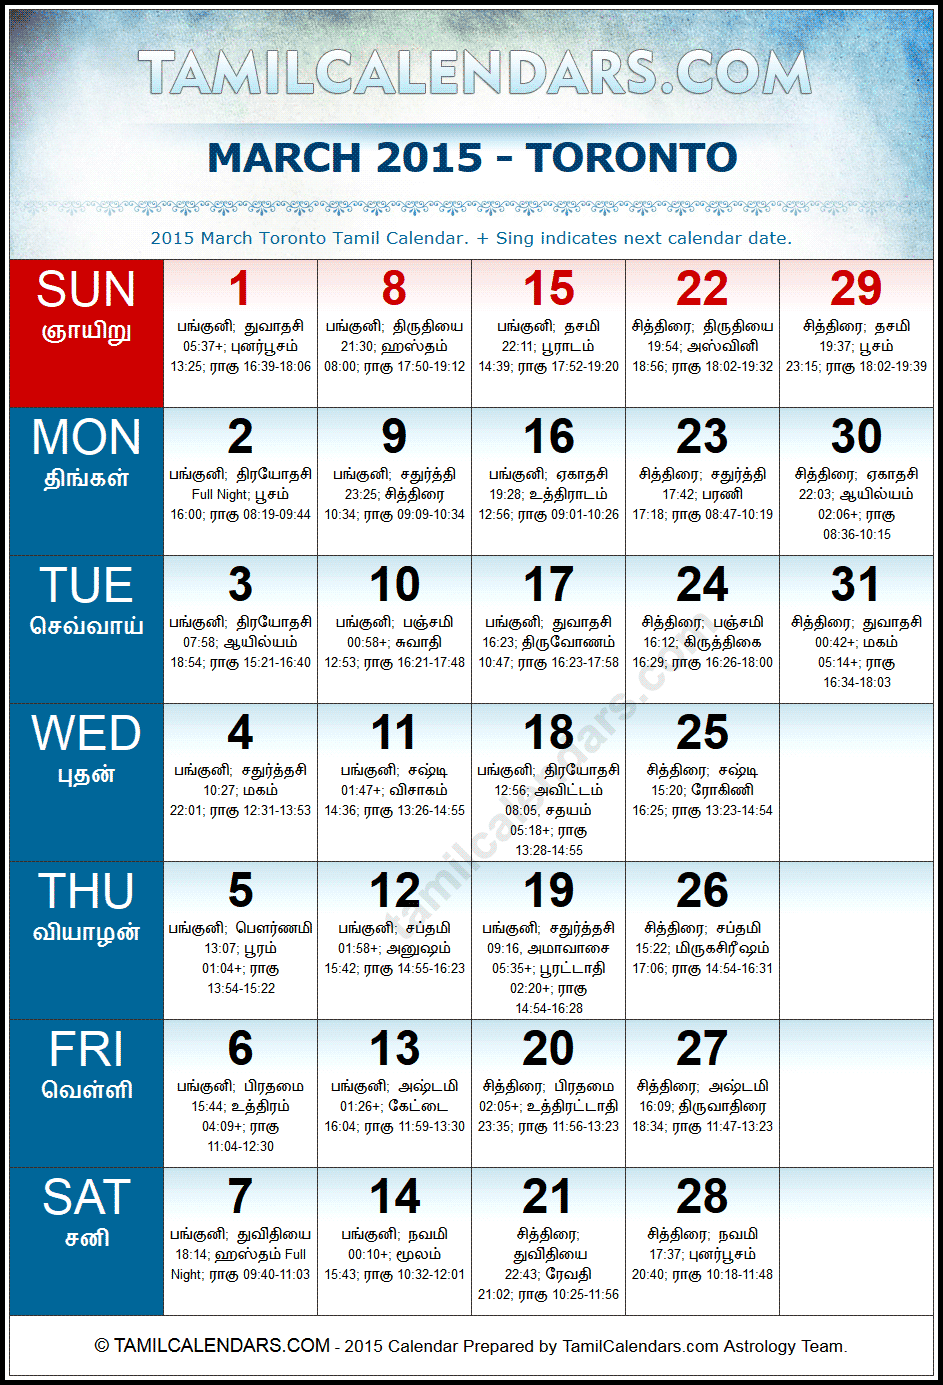 March 2015 Tamil Calendar for Toronto, Canada